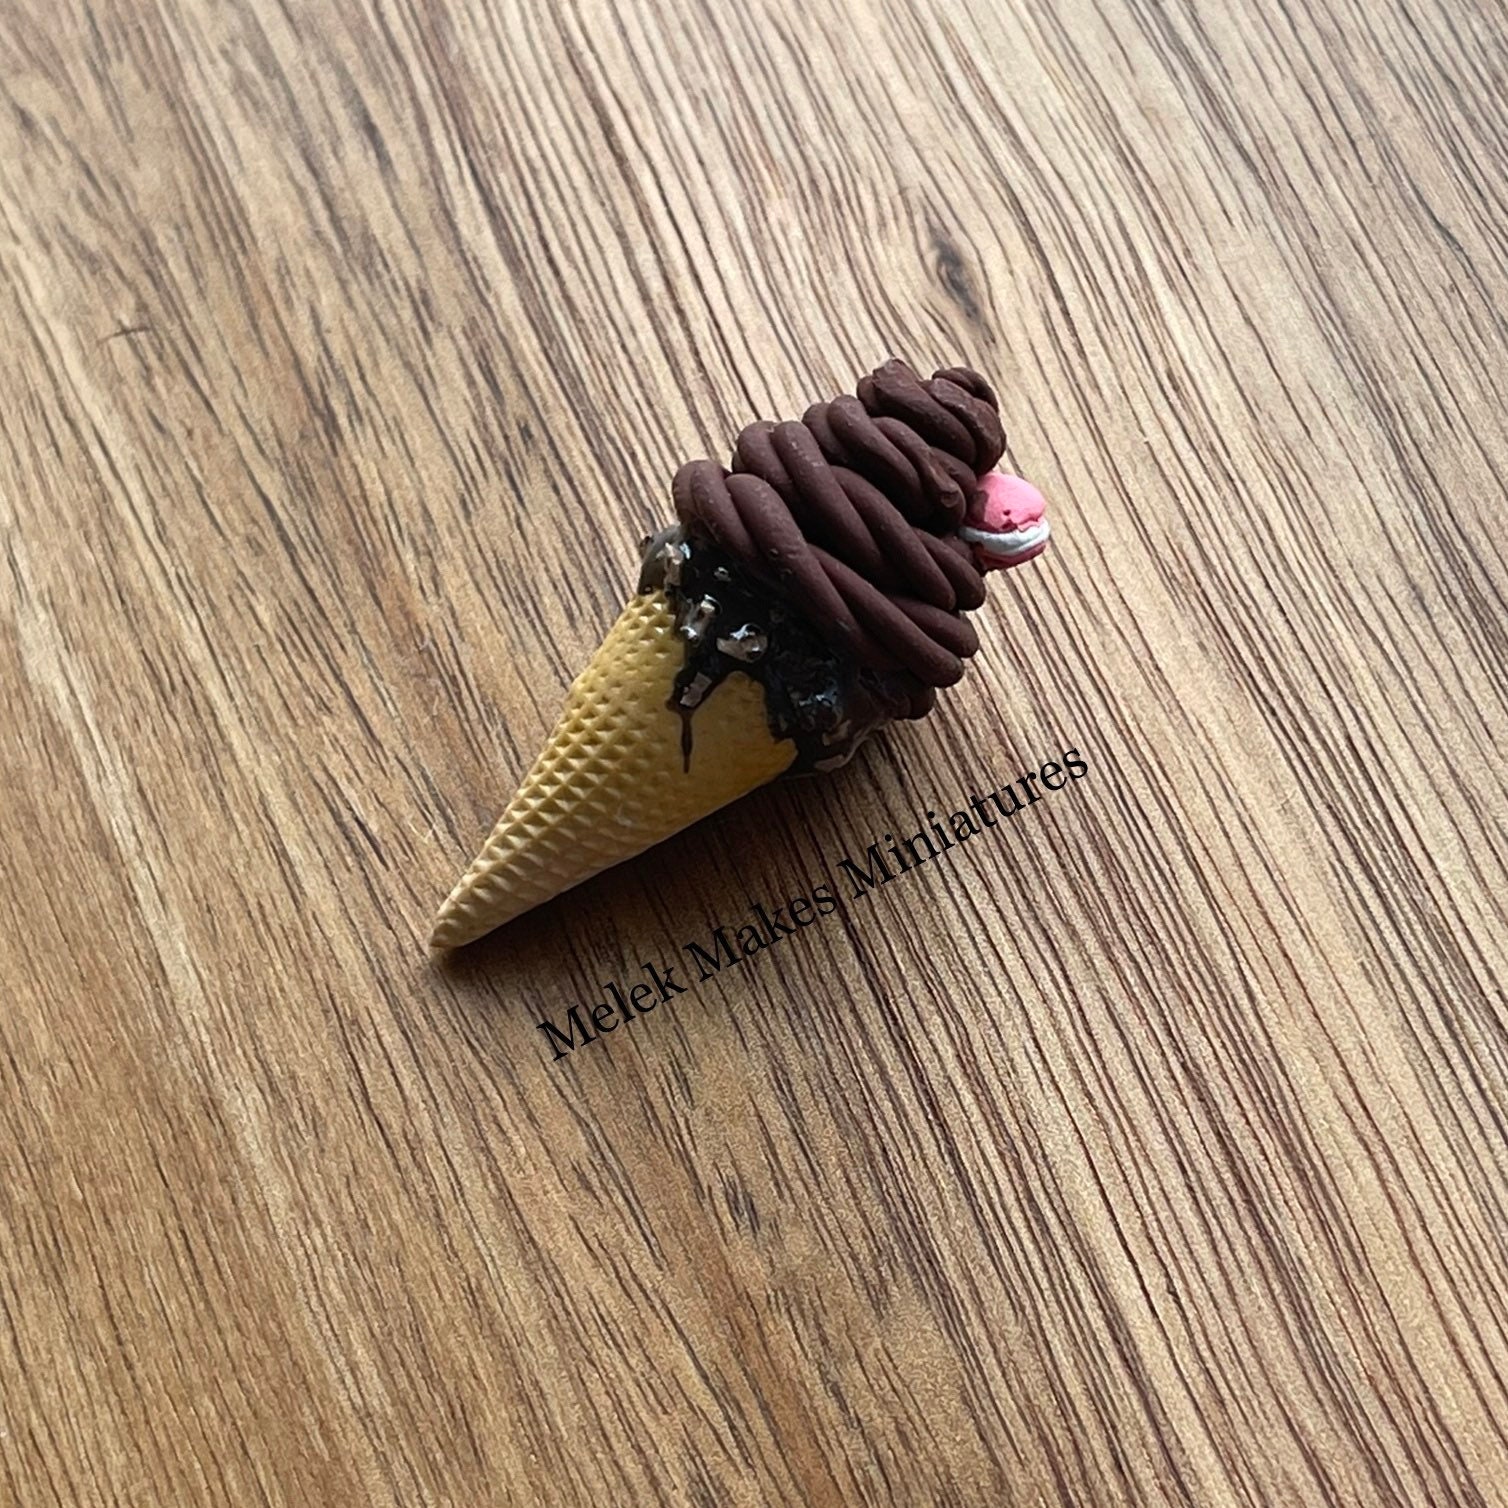 Mini waffle cones by Nova Nova - Telegraph India